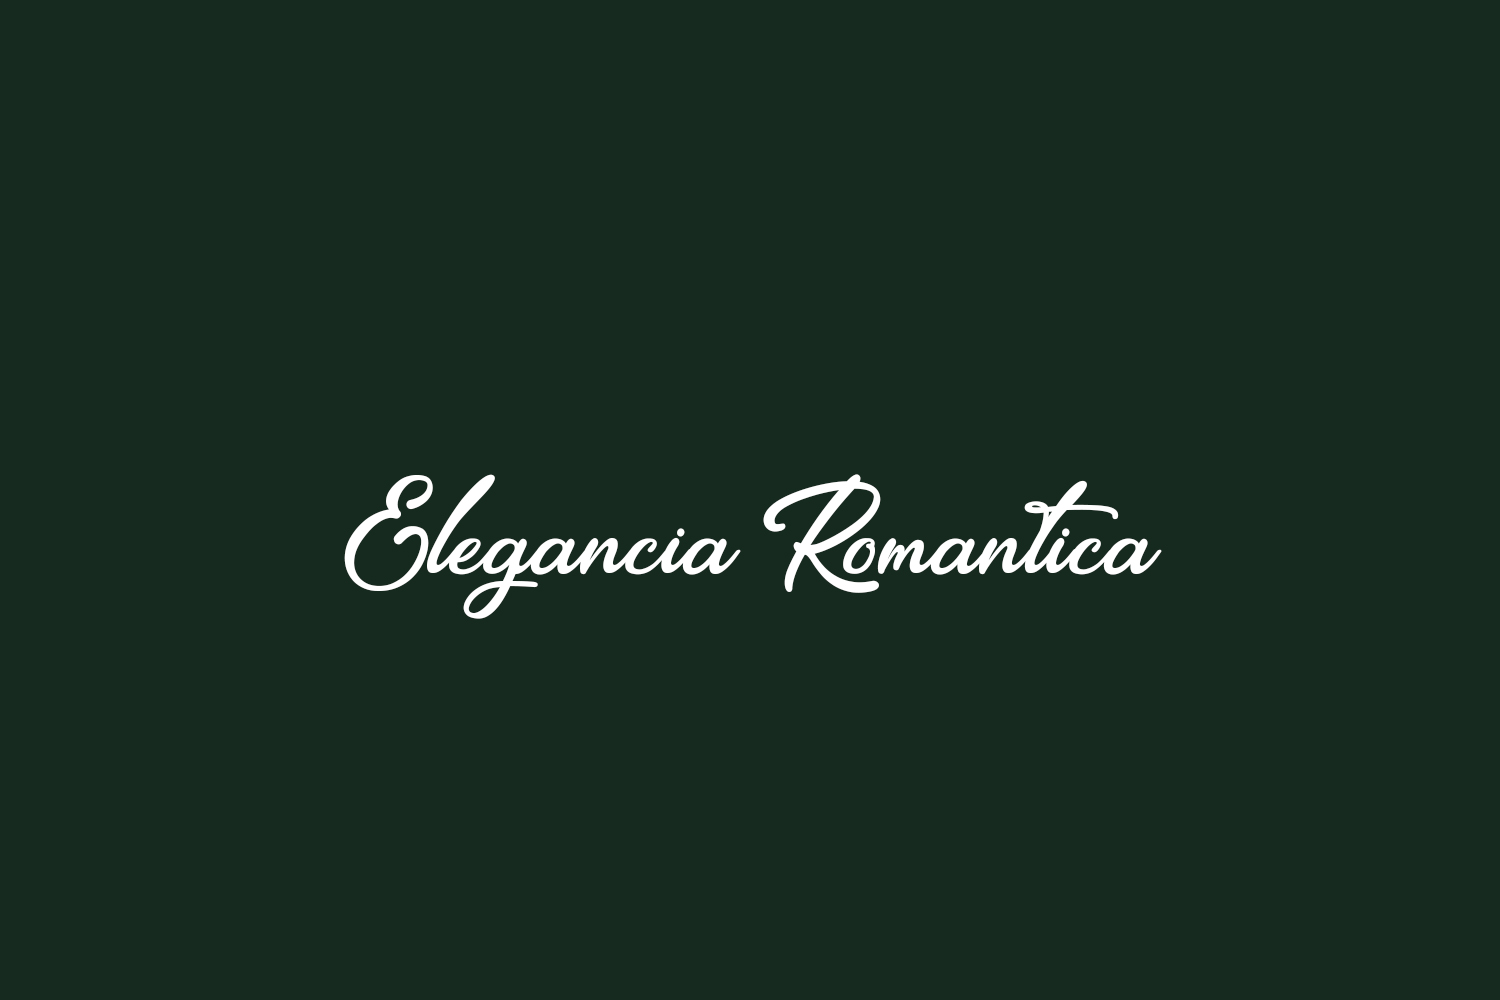 Elegancia Romantica Free Font